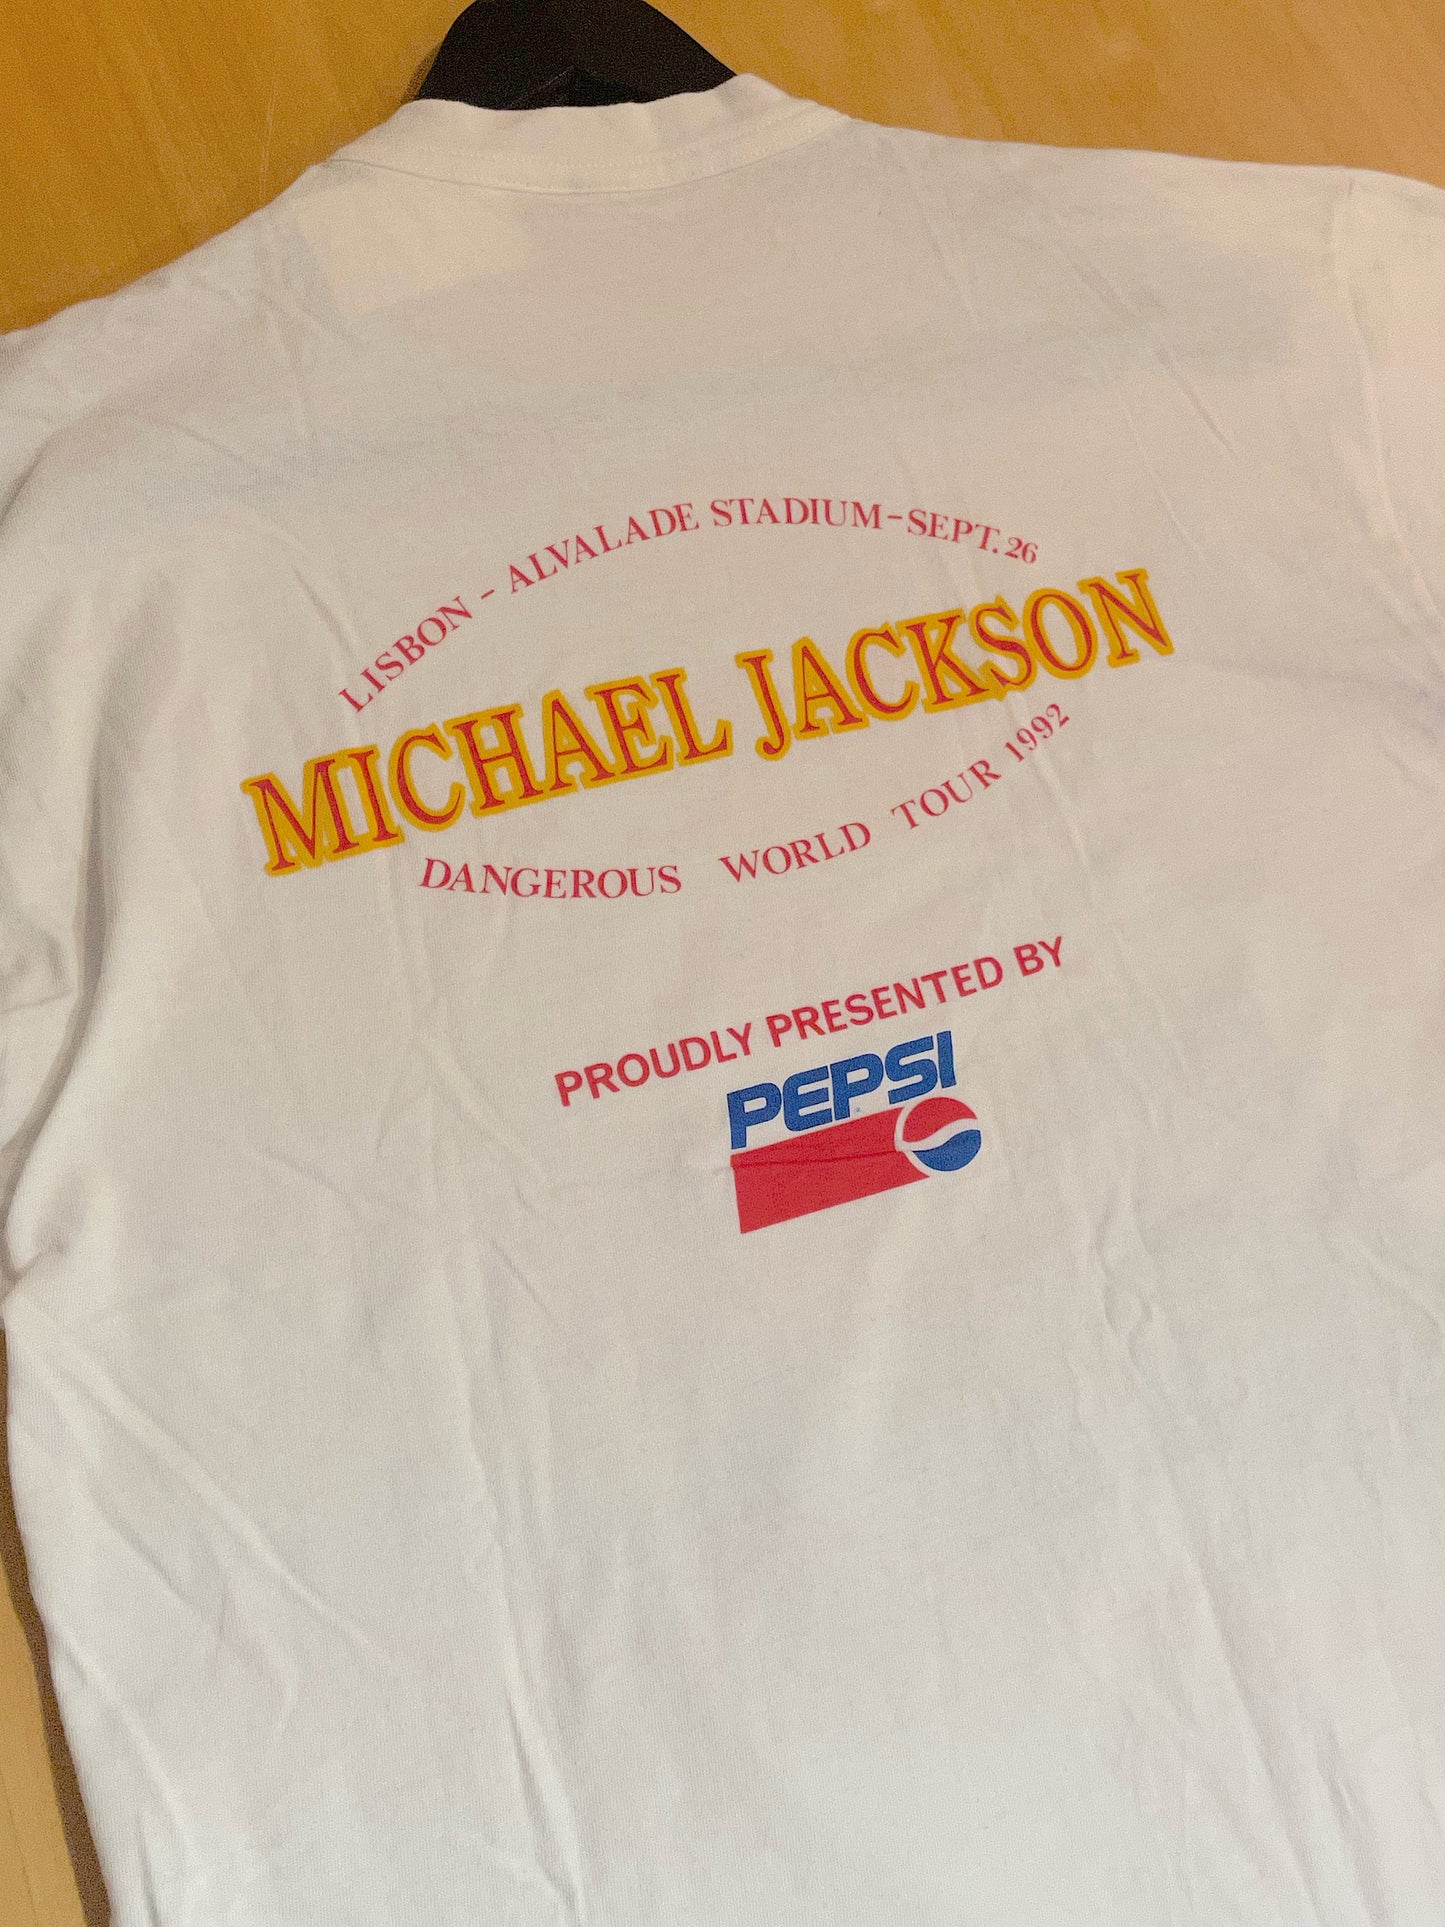 VINTAGE 1992 MICHAEL JACKSON "PEPSI DANGEROUS WORLD TOUR" MUSIC T-SHIRT  SZ: L